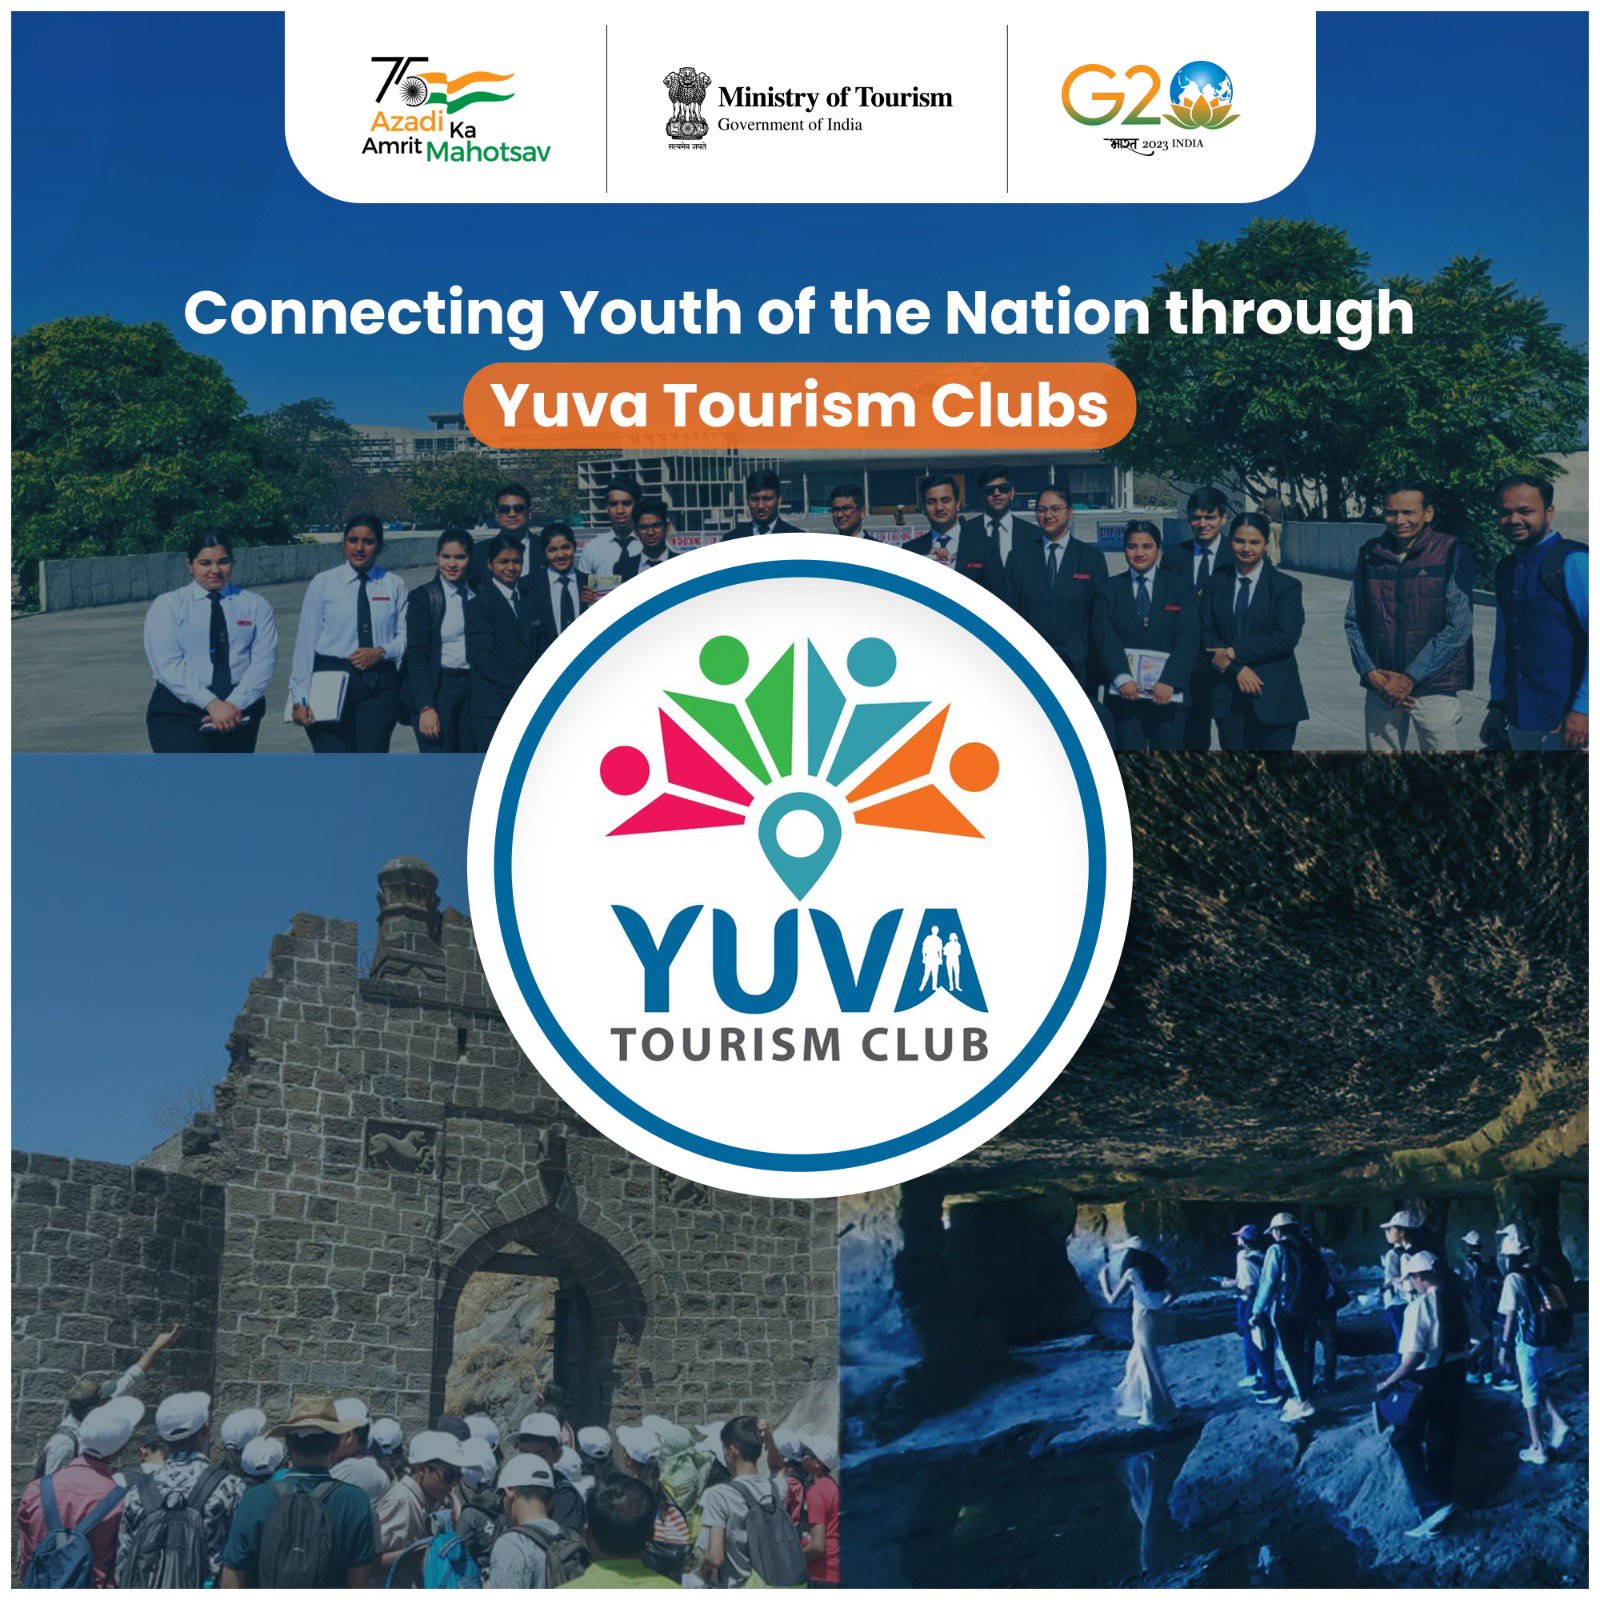 Arunachal Pradesh launches ‘Yuva Tourism Club’